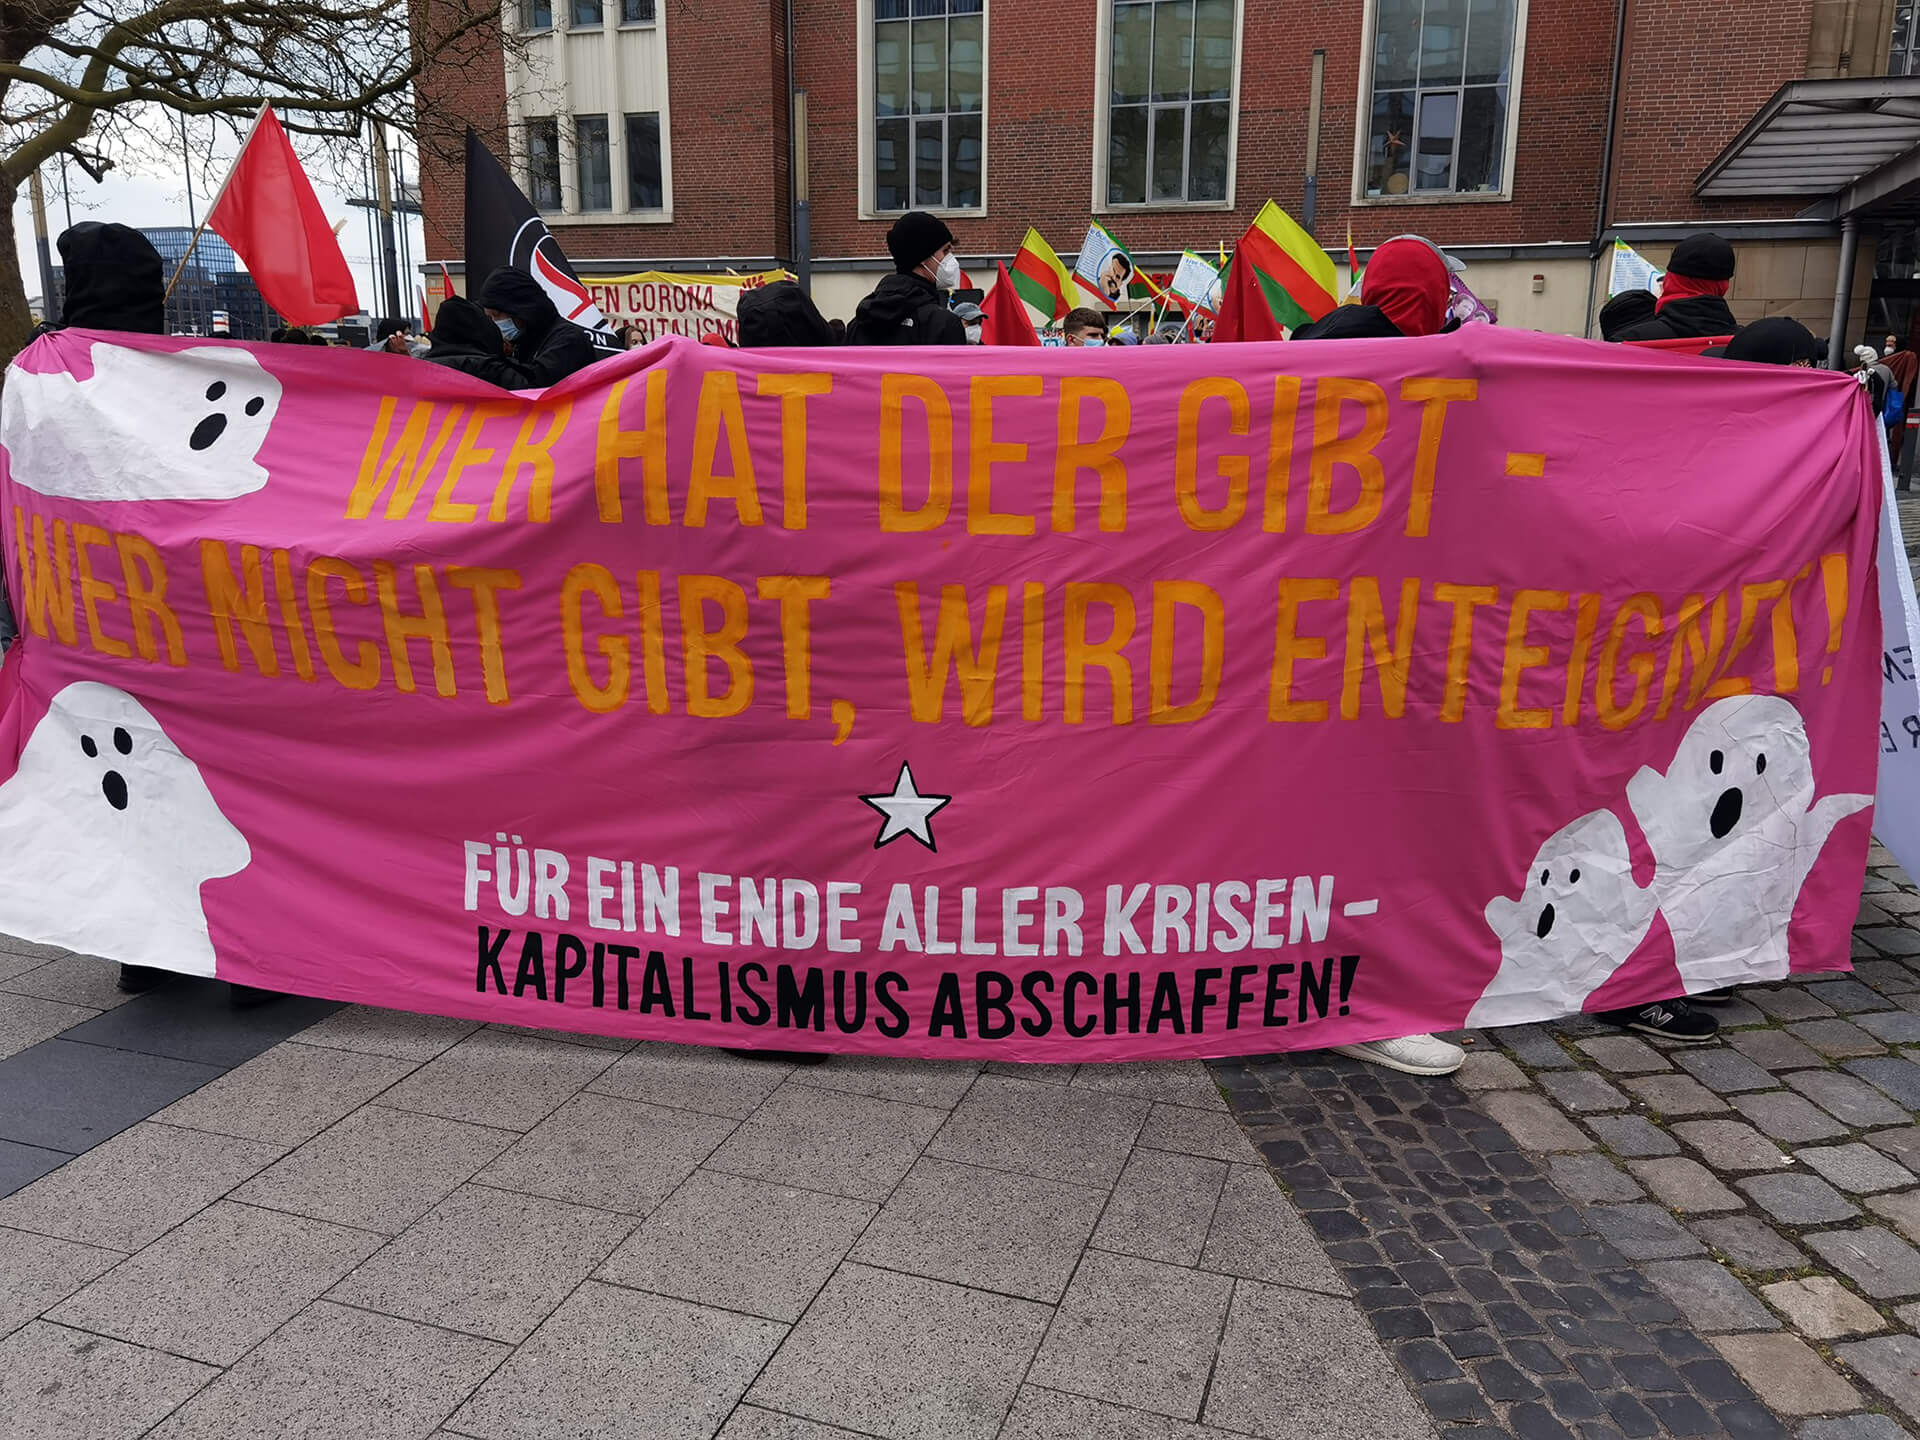 Transparent auf einer Demonstration mit folgender Aufschrift: Wer hat der gibt - Wer nicht gibt, wird enteignet! Für ein Ende aller Krisen - Kapitalismus abschaffen!